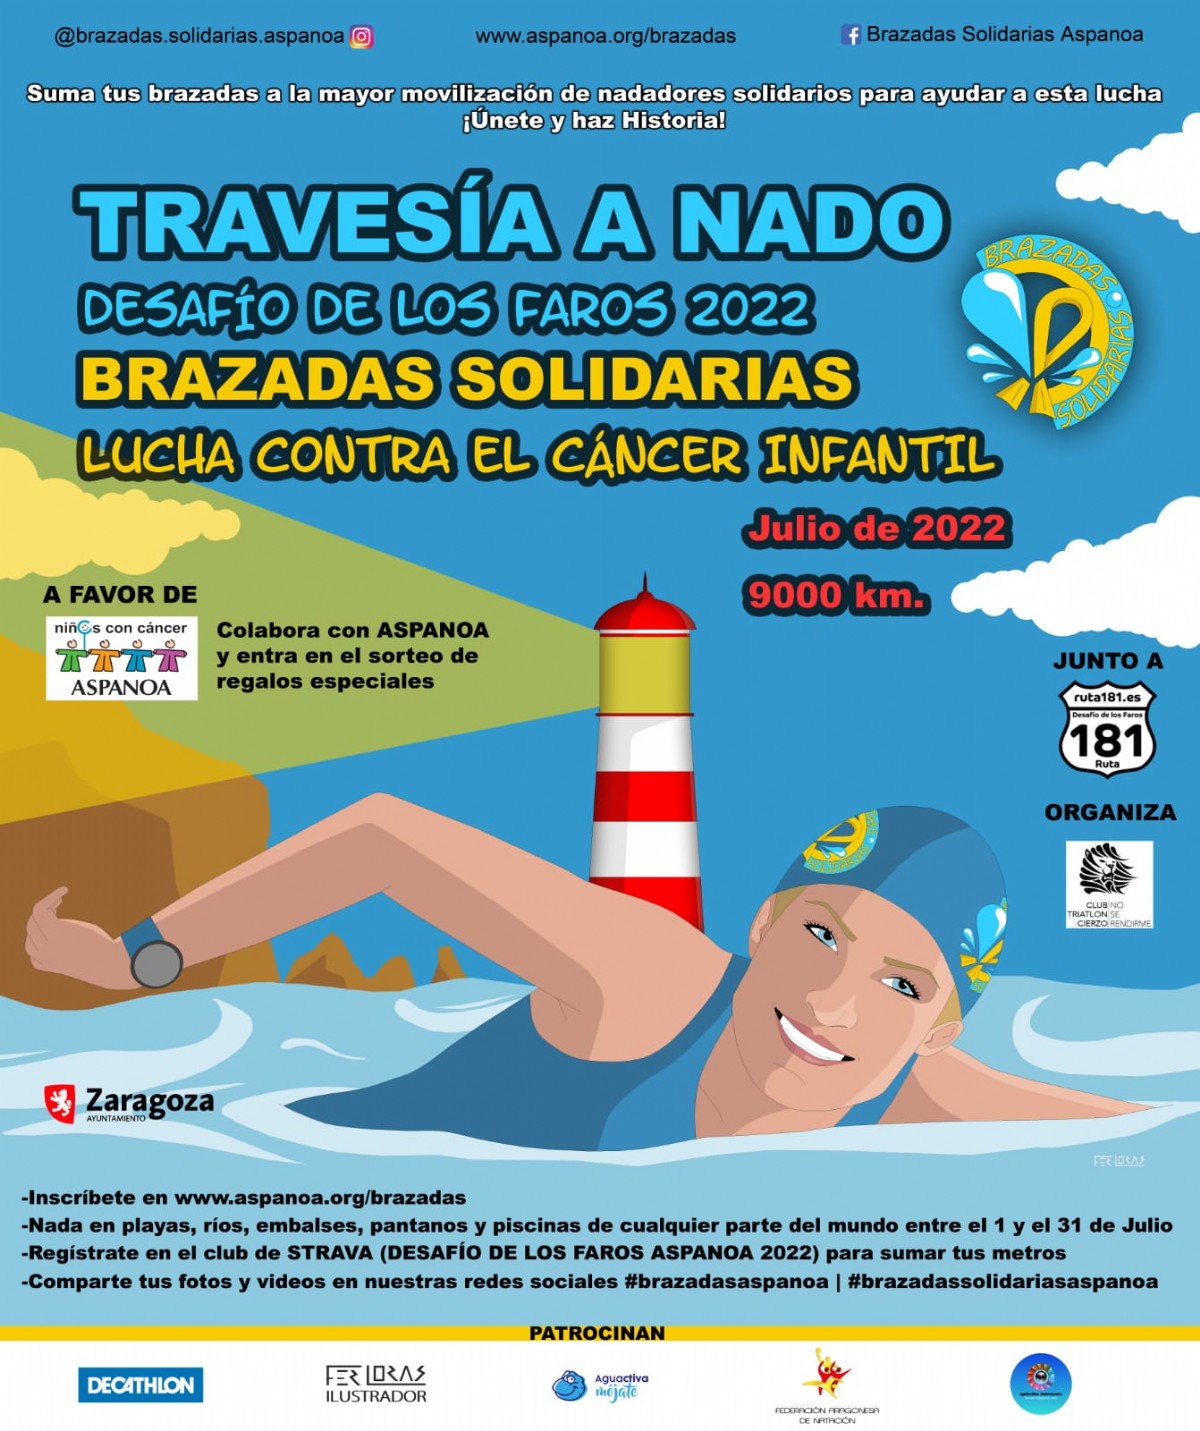 La travesía a nado «Desafío de los Faros ASPANOA 2022» comenzará el 1 de julio